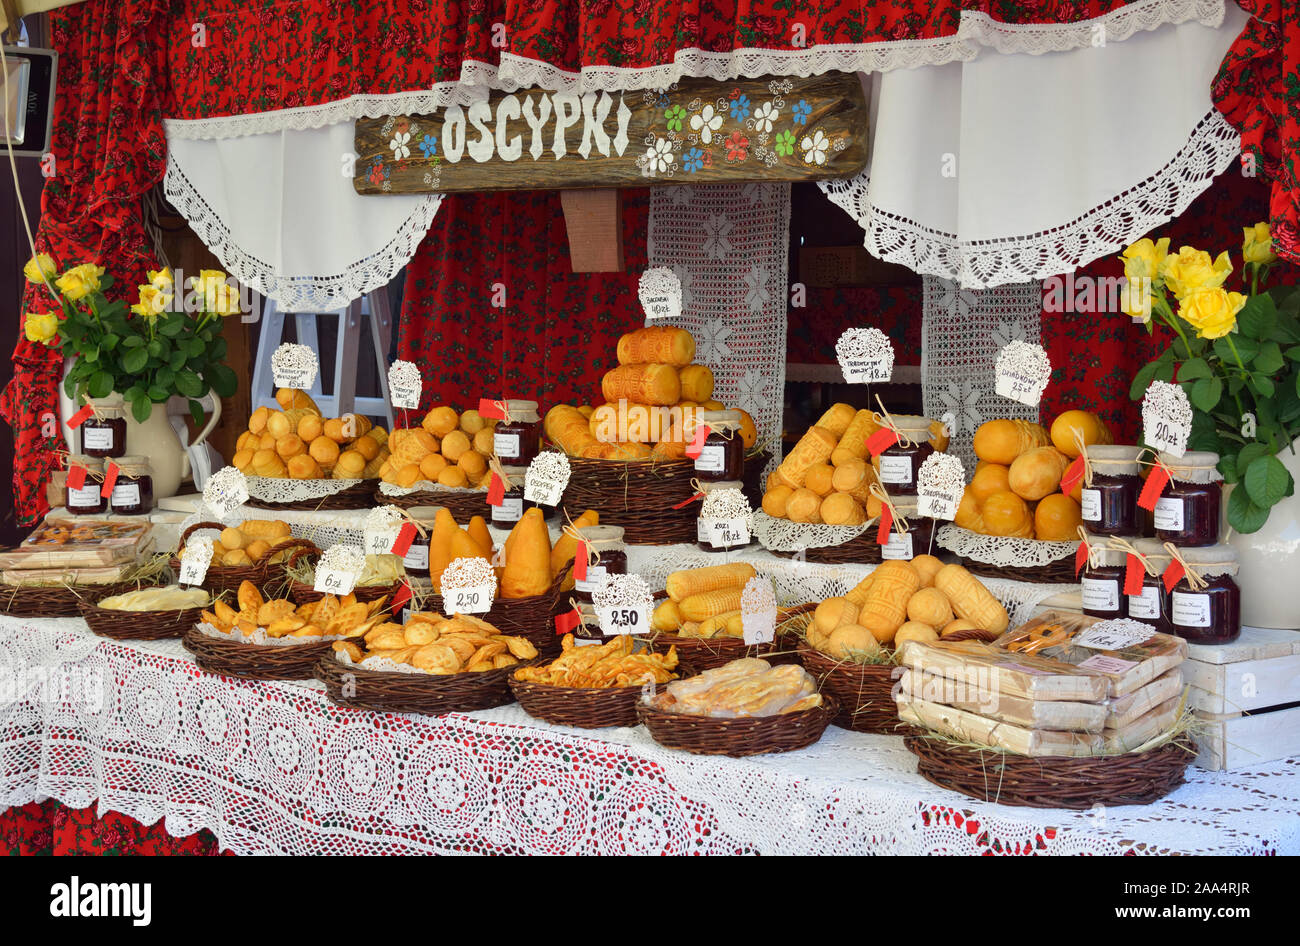 Tradizionale polacco formaggi affumicati (oscypki). Cracovia in Polonia Foto Stock